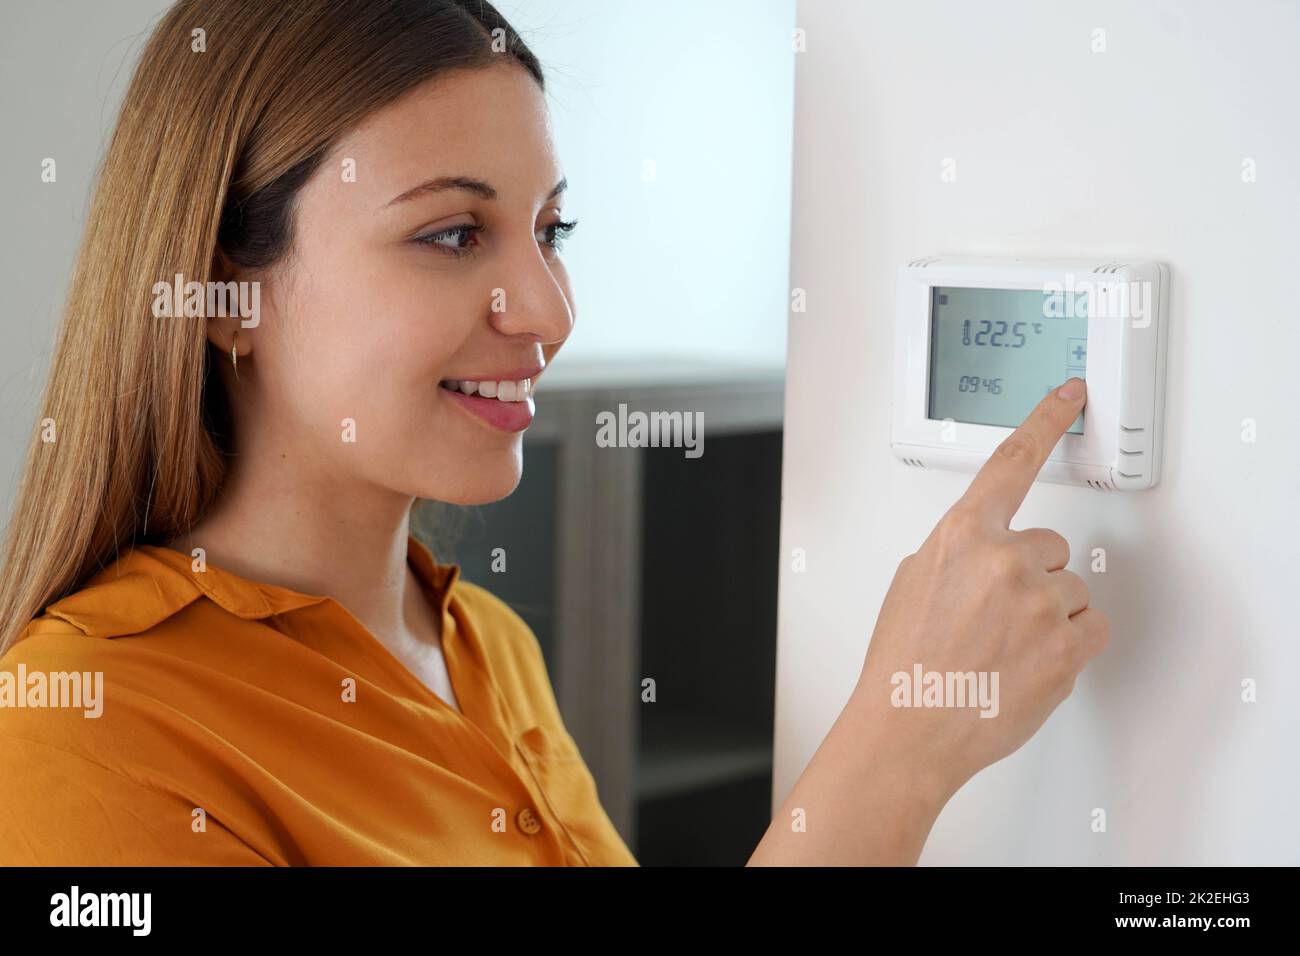 Gros plan de la jeune femme réglant la température du chauffage central à la maison sur le thermostat. Réduire la température pour économiser l'énergie. Banque D'Images